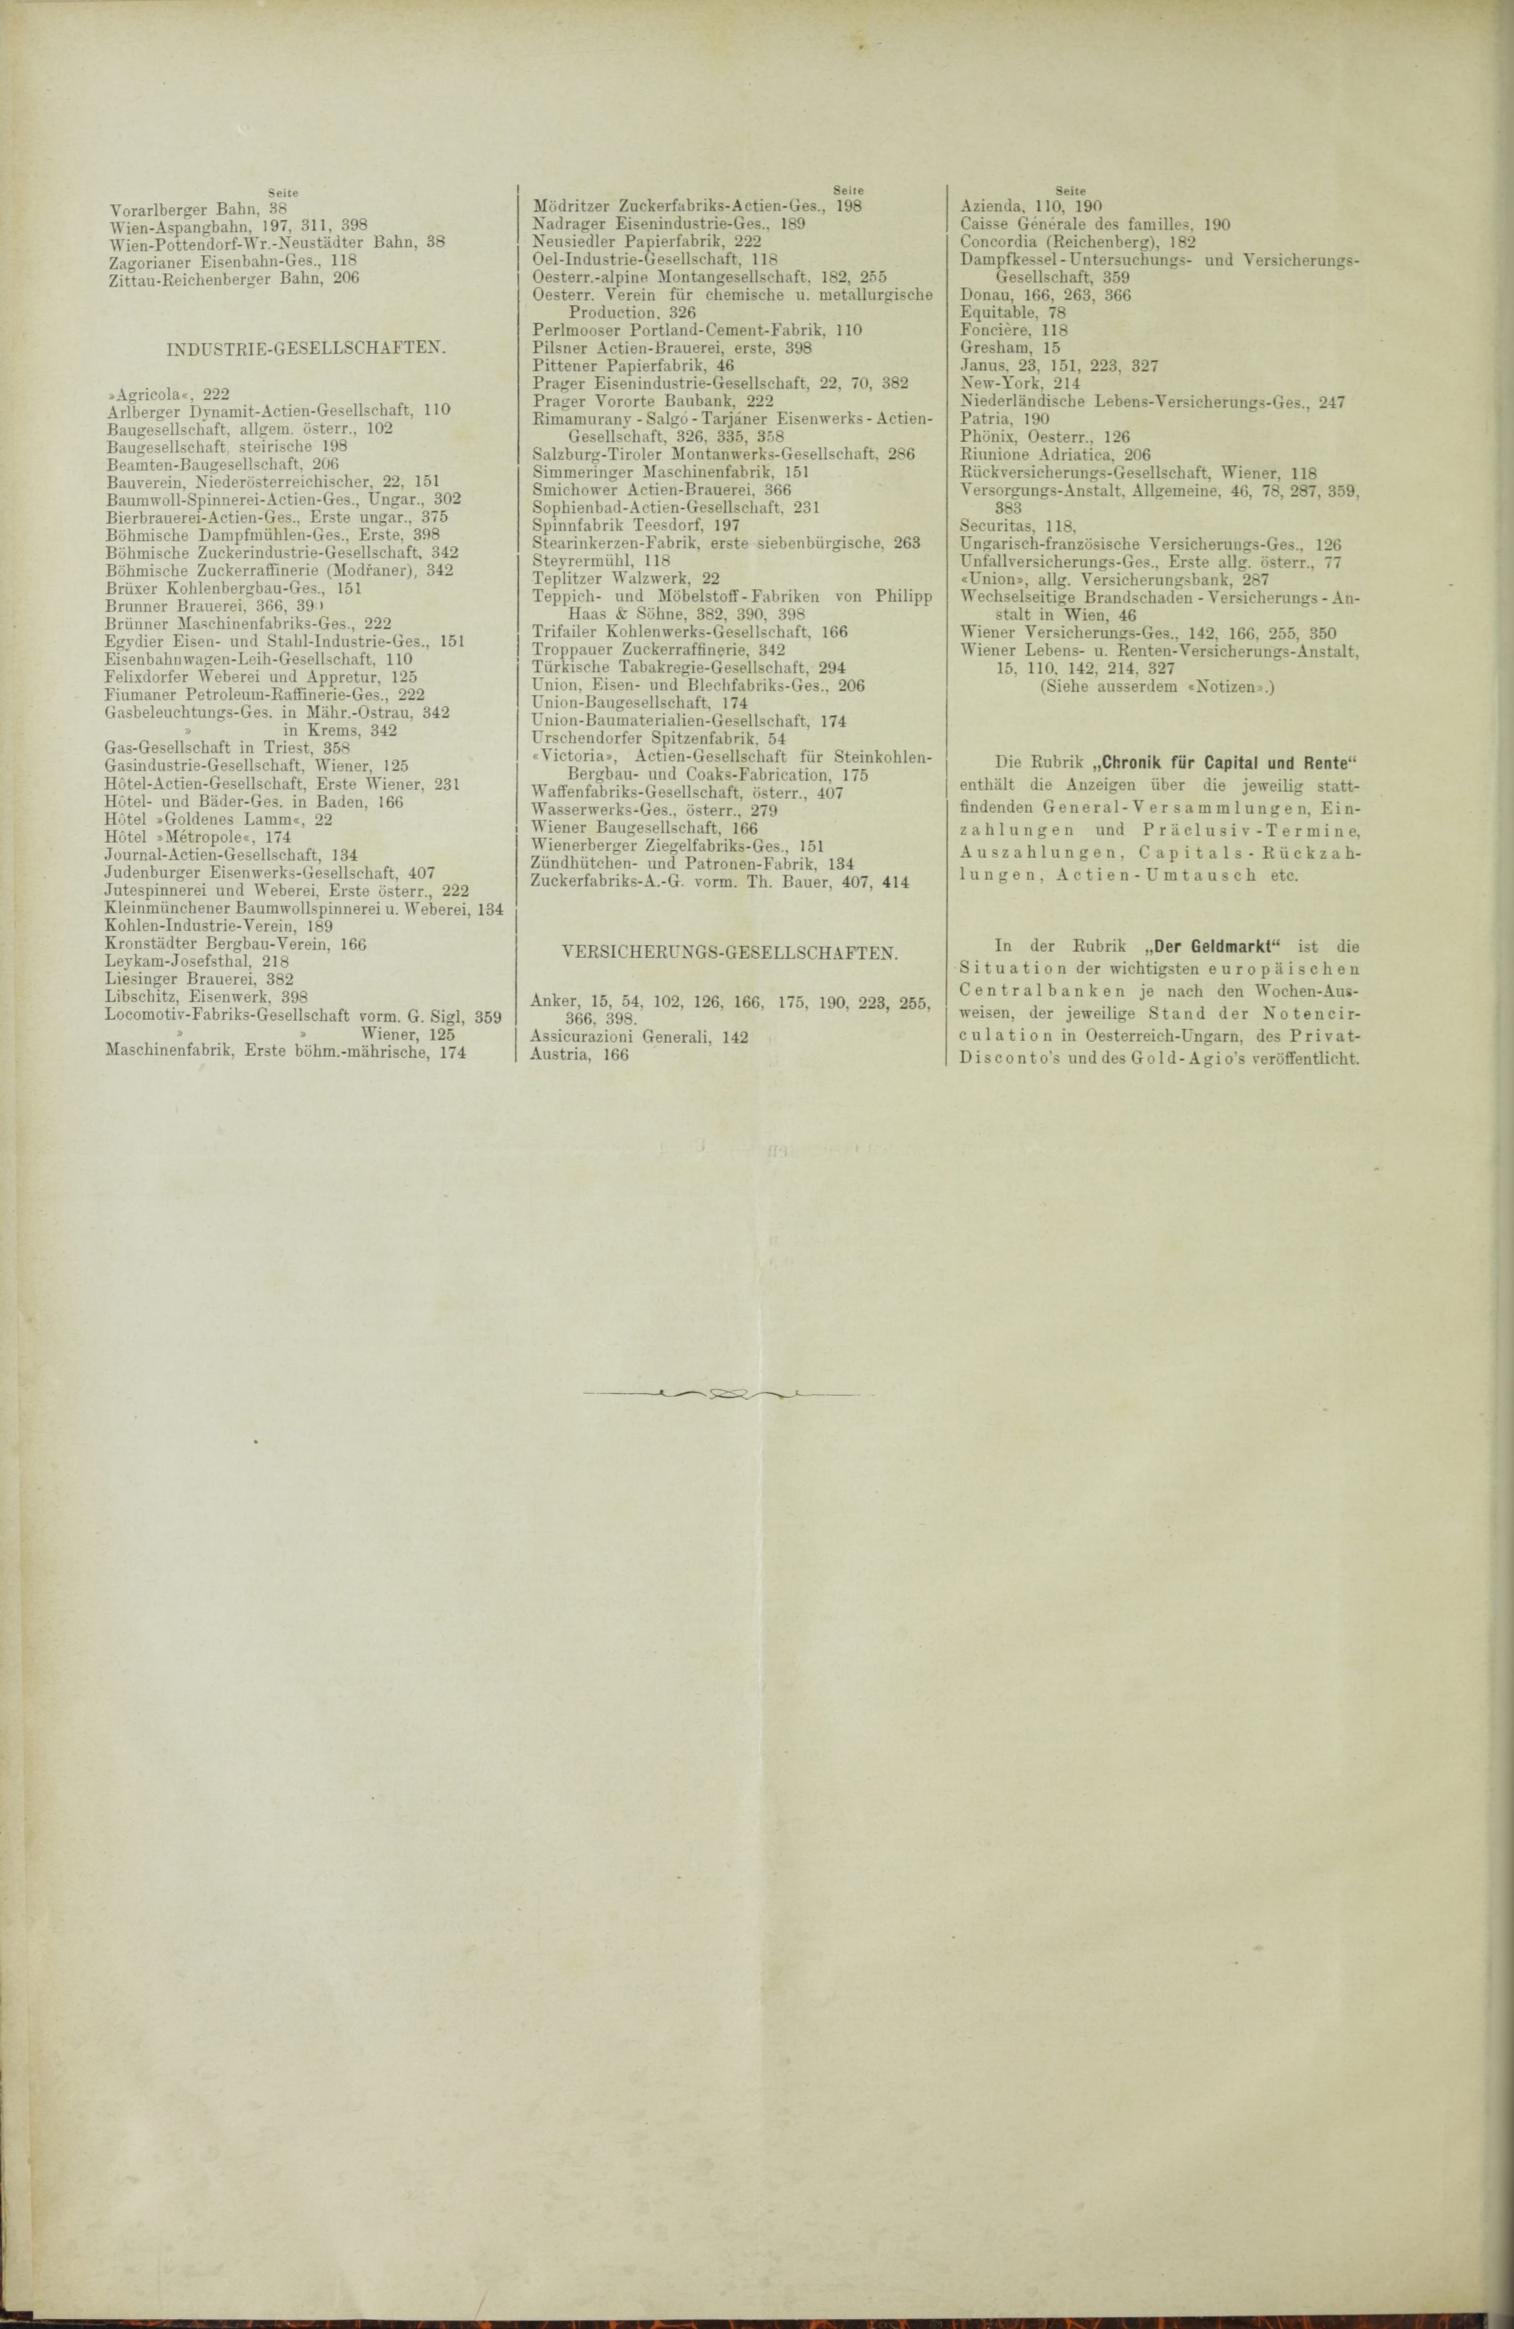 Der Tresor 21.10.1886 - Seite 12